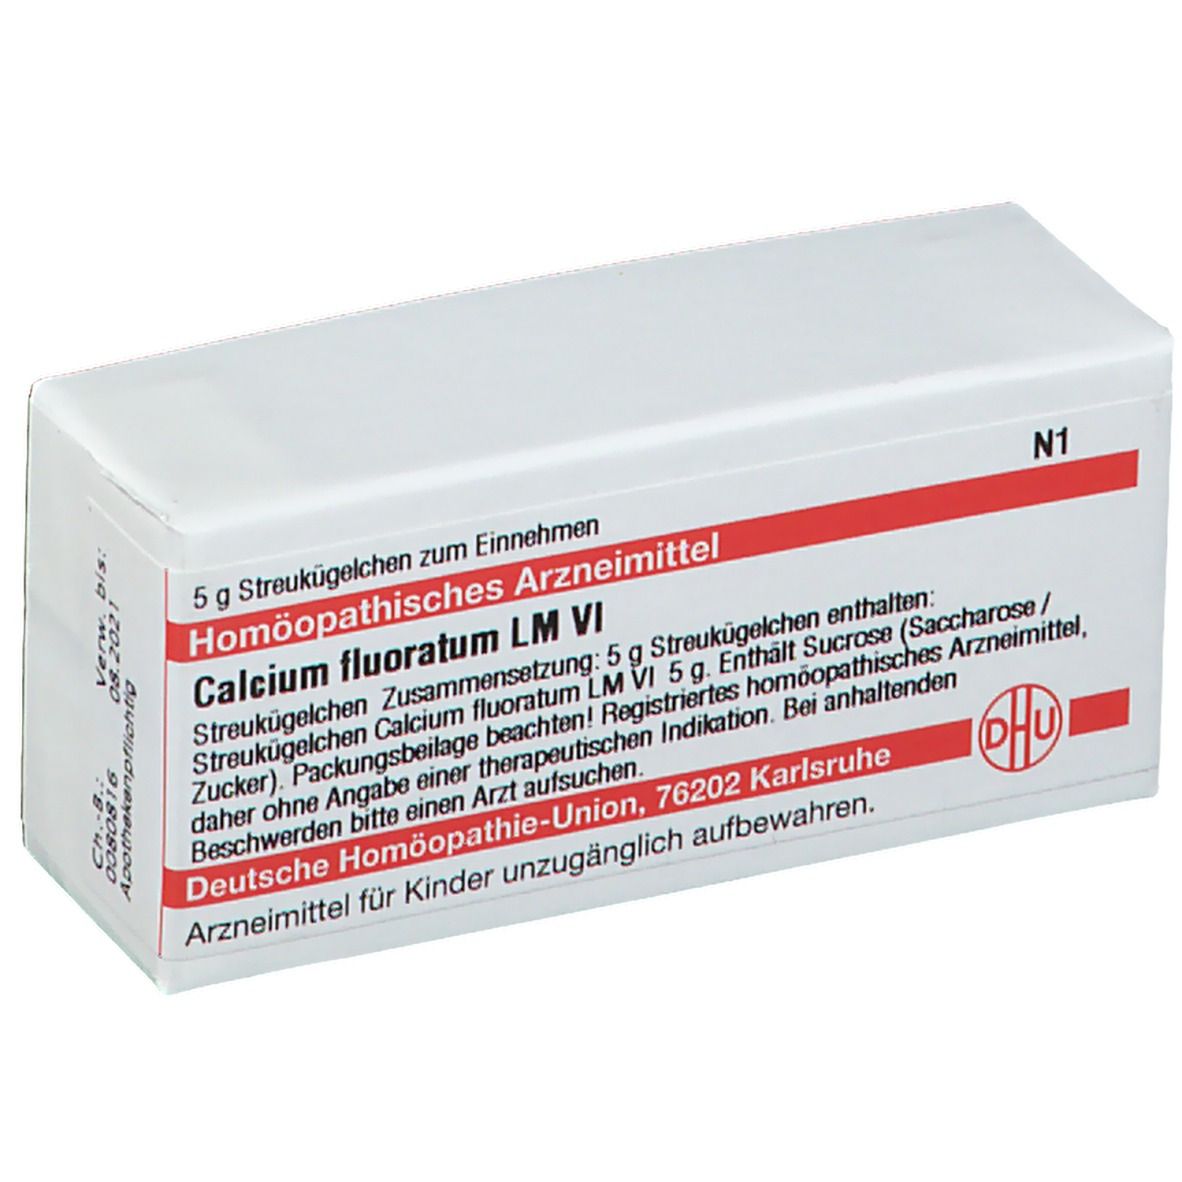 DHU Calcium Fluoratum LM VI